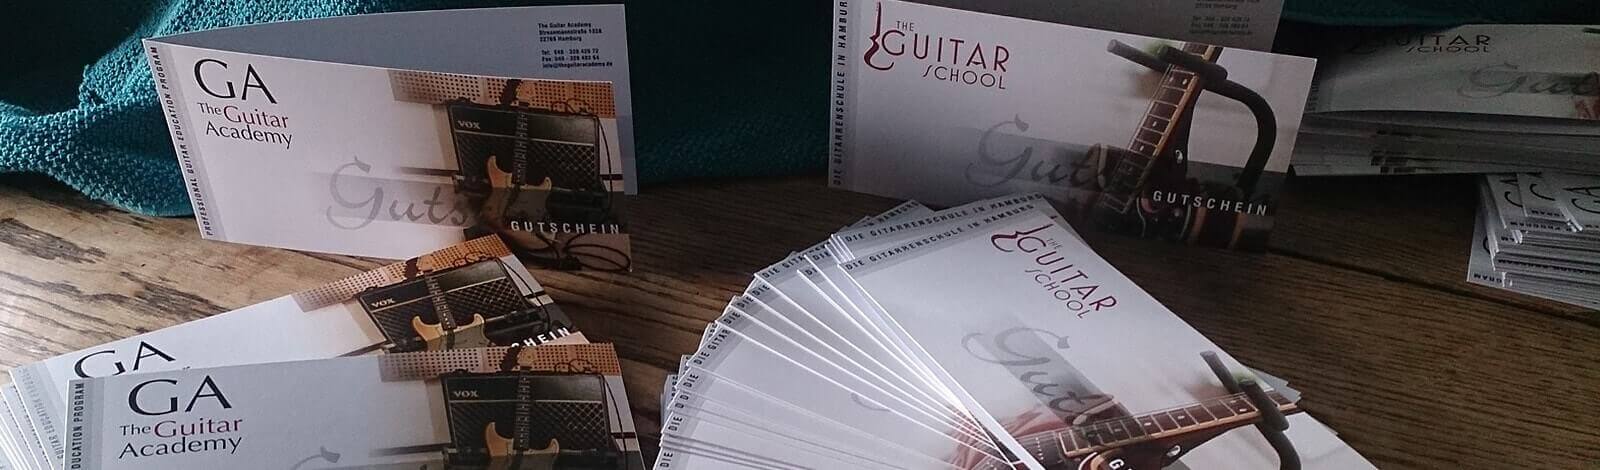 Gutscheine verschenken - The Guitar School